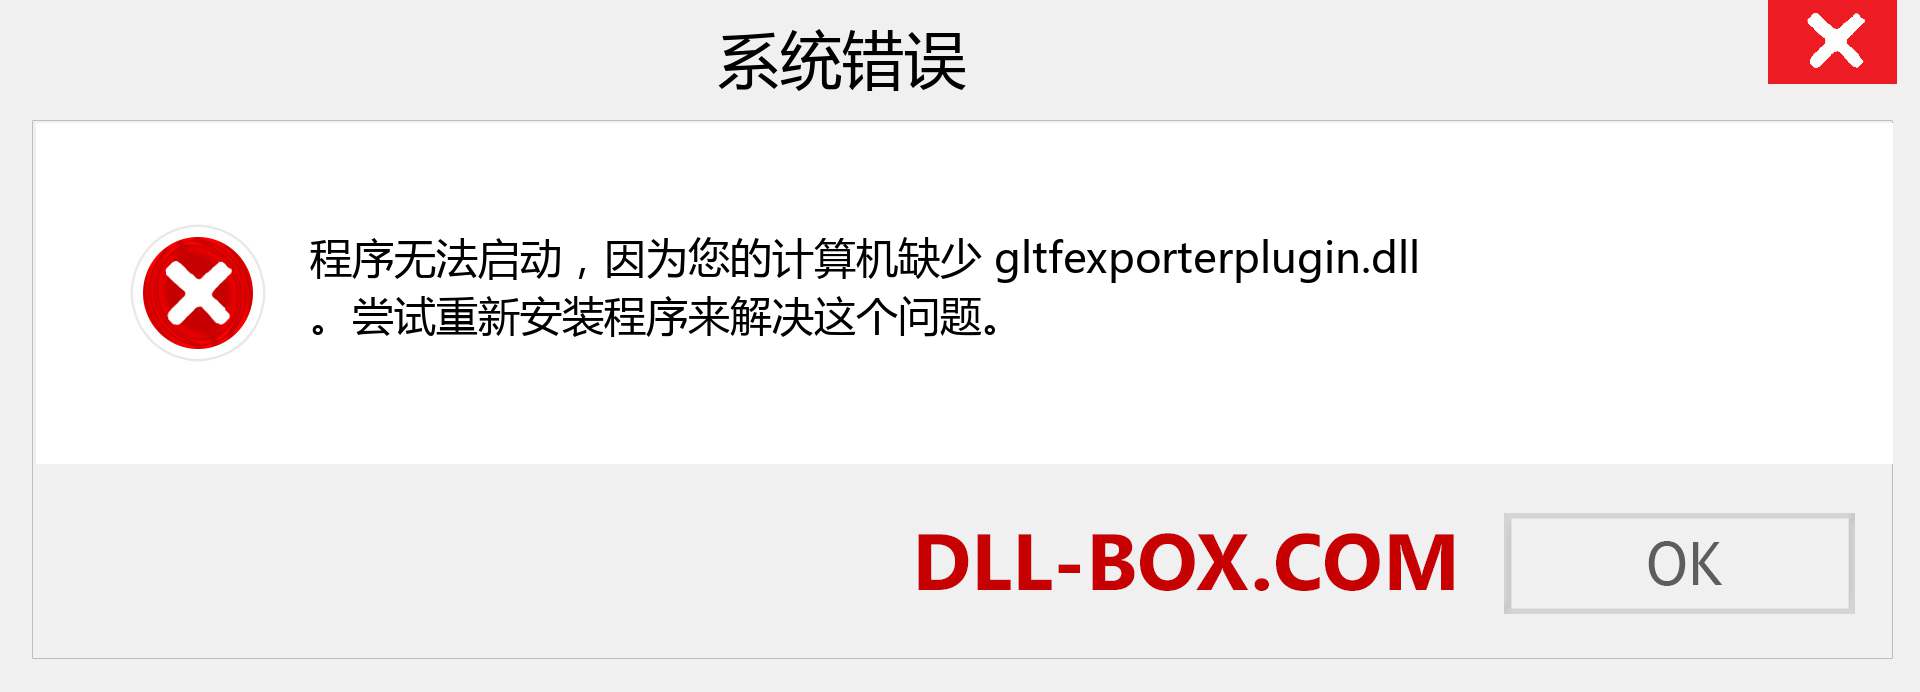 gltfexporterplugin.dll 文件丢失？。 适用于 Windows 7、8、10 的下载 - 修复 Windows、照片、图像上的 gltfexporterplugin dll 丢失错误